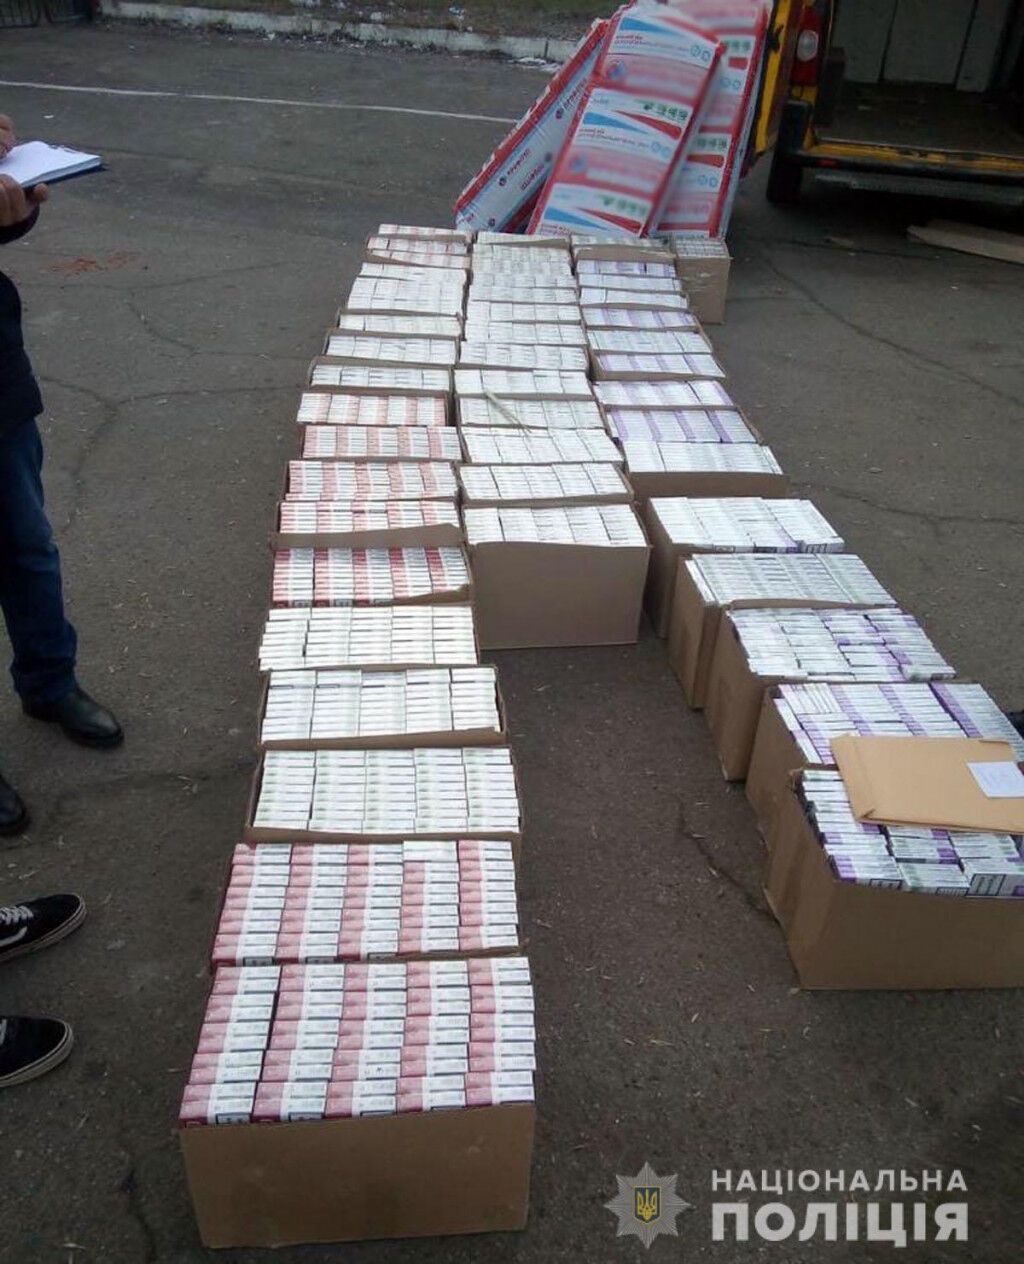 Поліцейські Донеччини викрили схему реалізації фальсифікованої тютюнової продукції в різних областях України